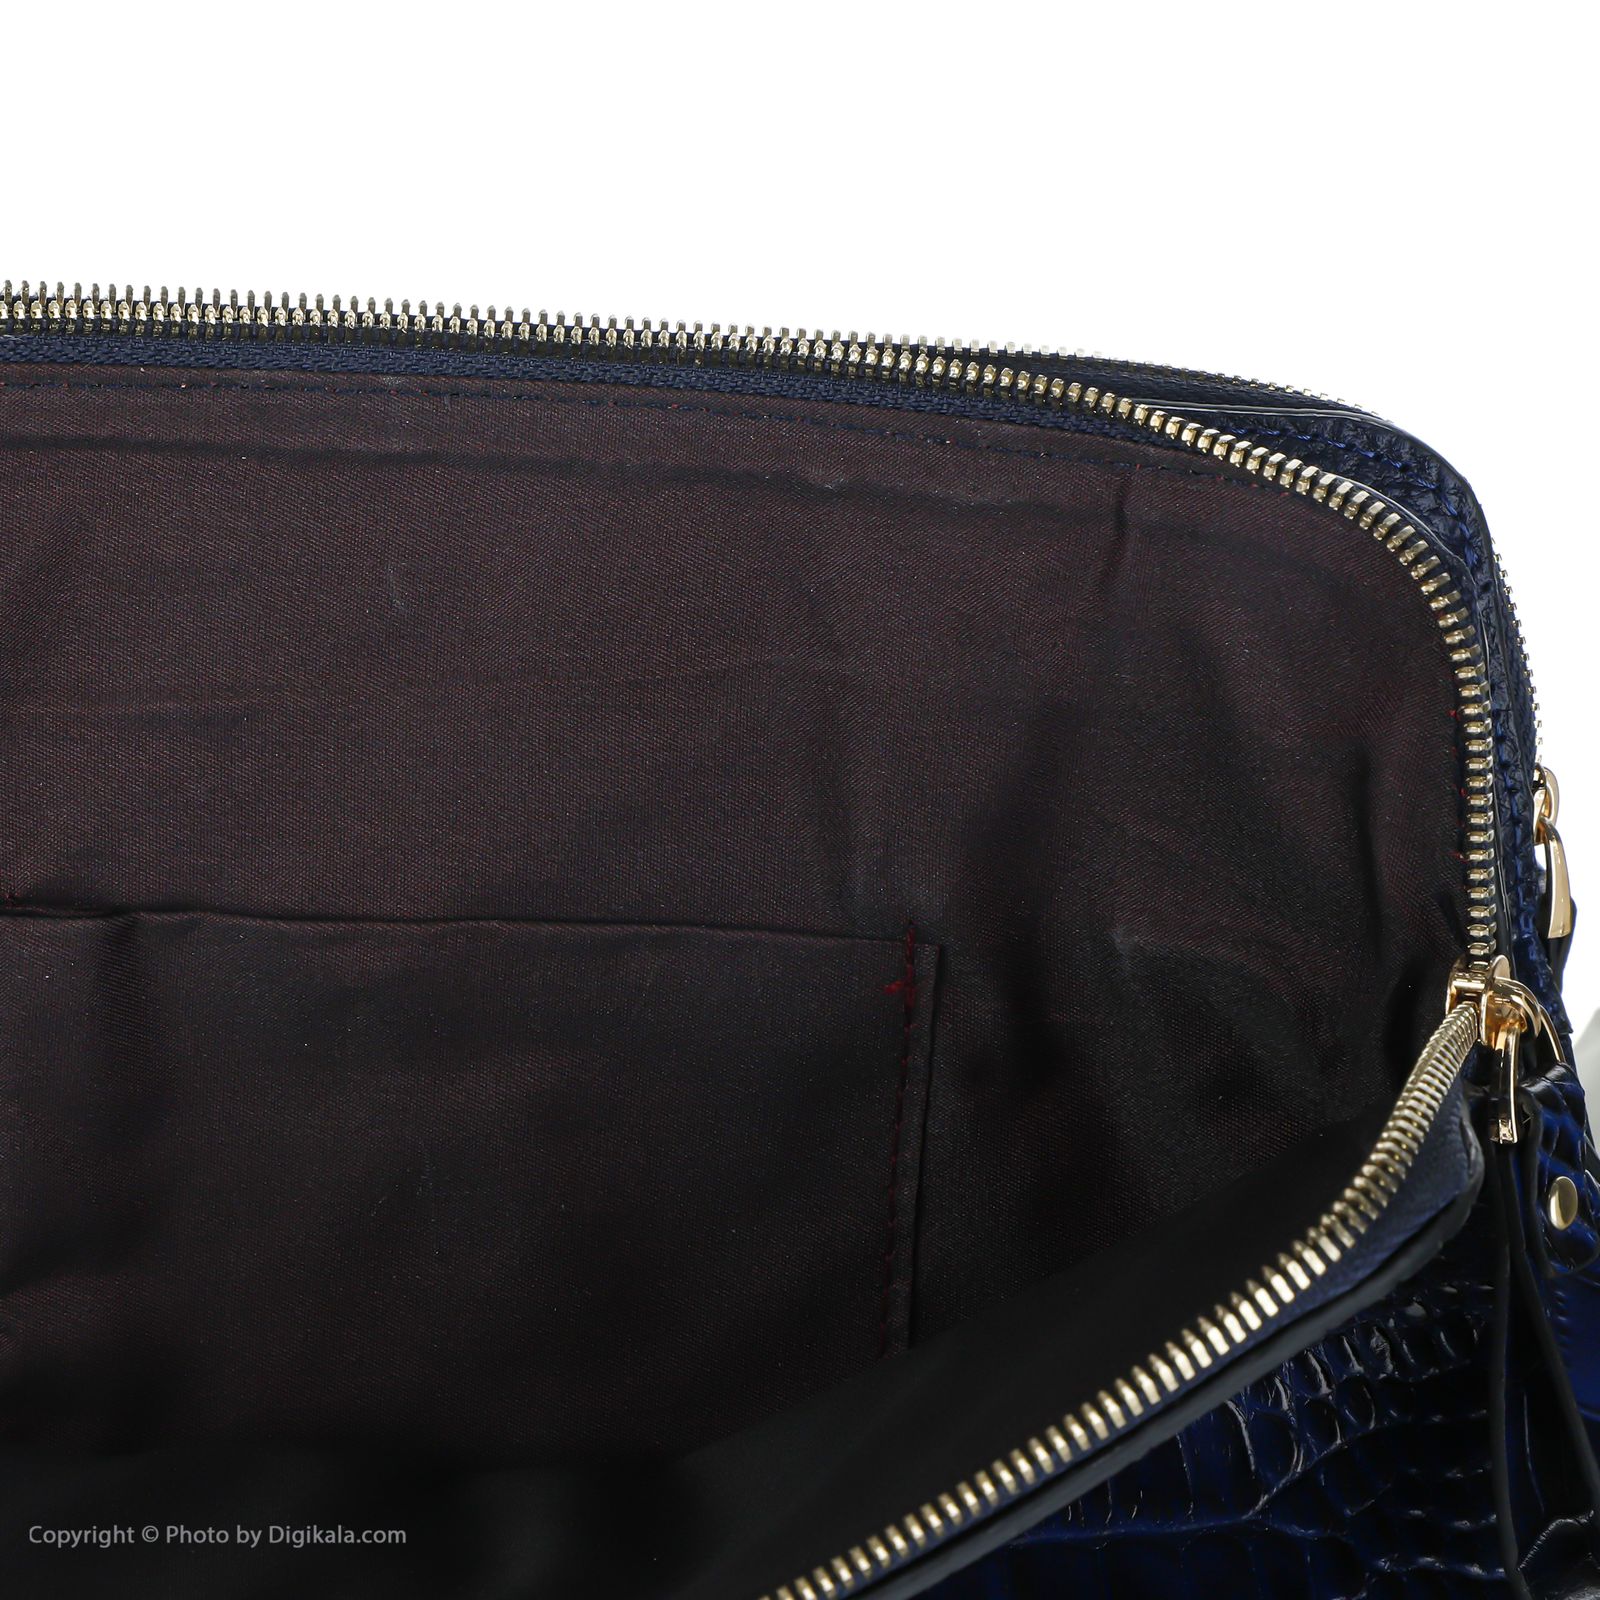 کیف دستی زنانه چرم کروکو مدل 400005371 -  - 7